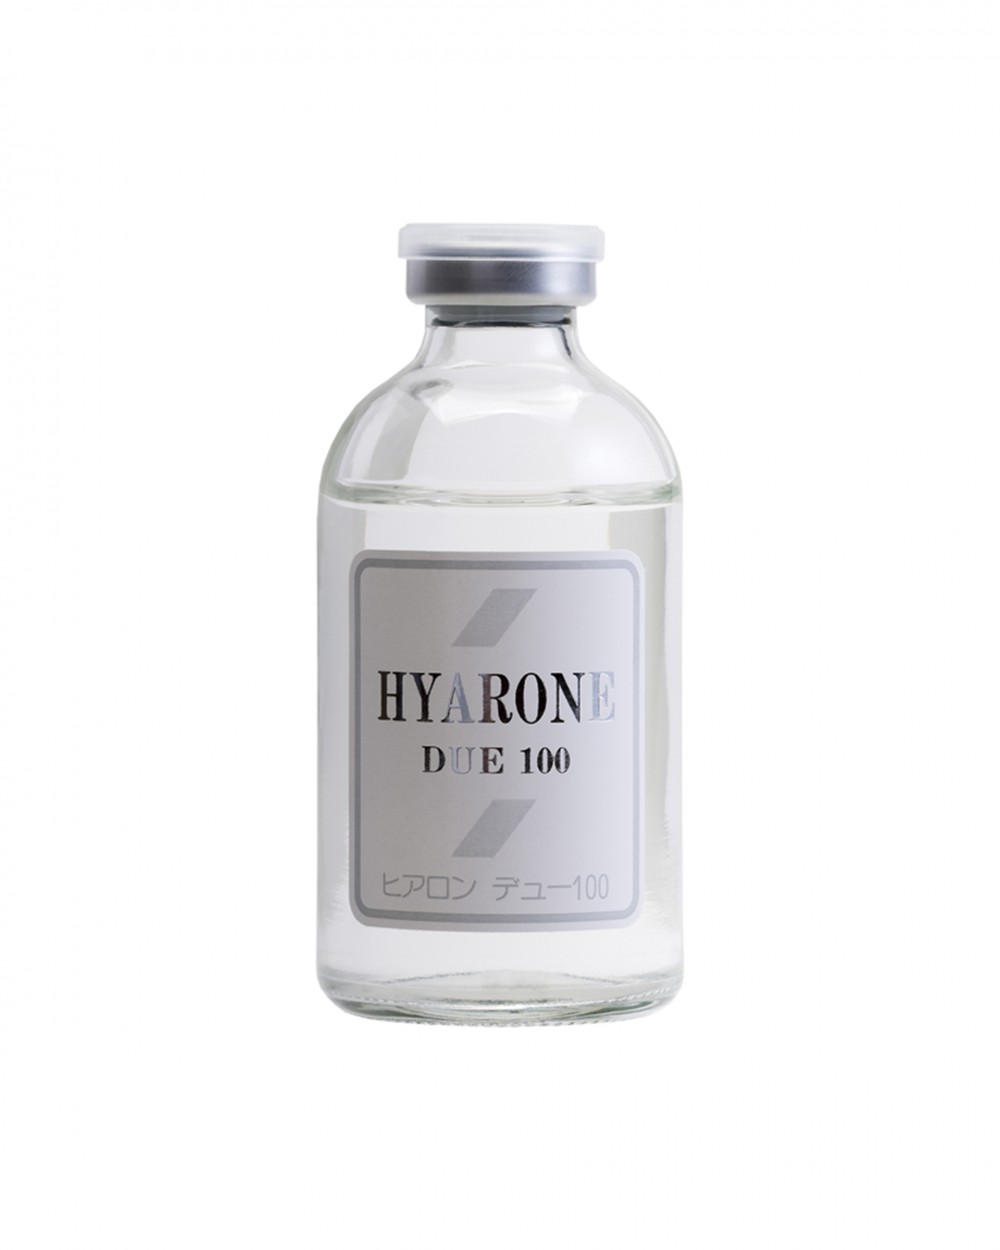 Купить гиалуроновую кислоту UTP Hyarone due 100 в Москве - Japan-Biolines